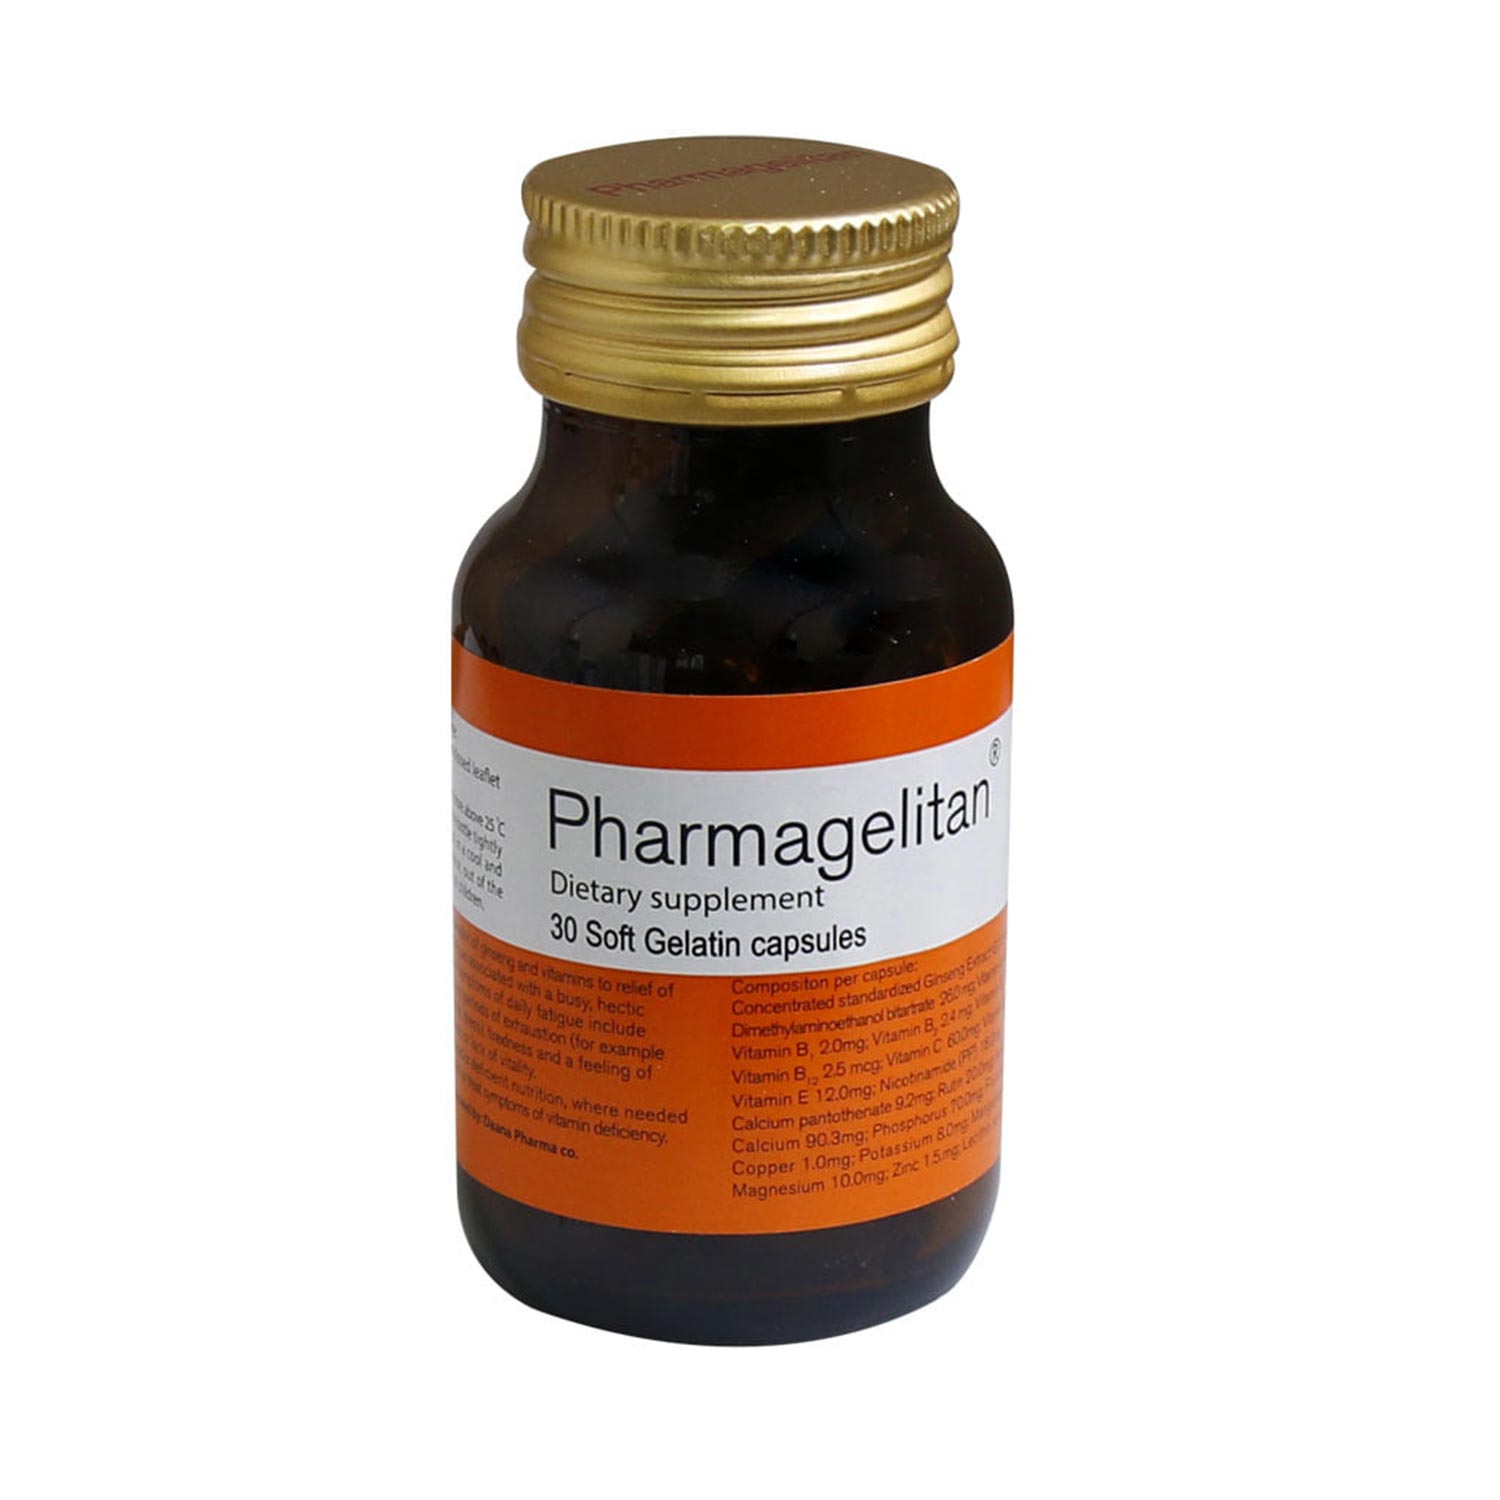 کپسول مولتی ویتامین فارماژلیتان(pharmagelitan)دانا